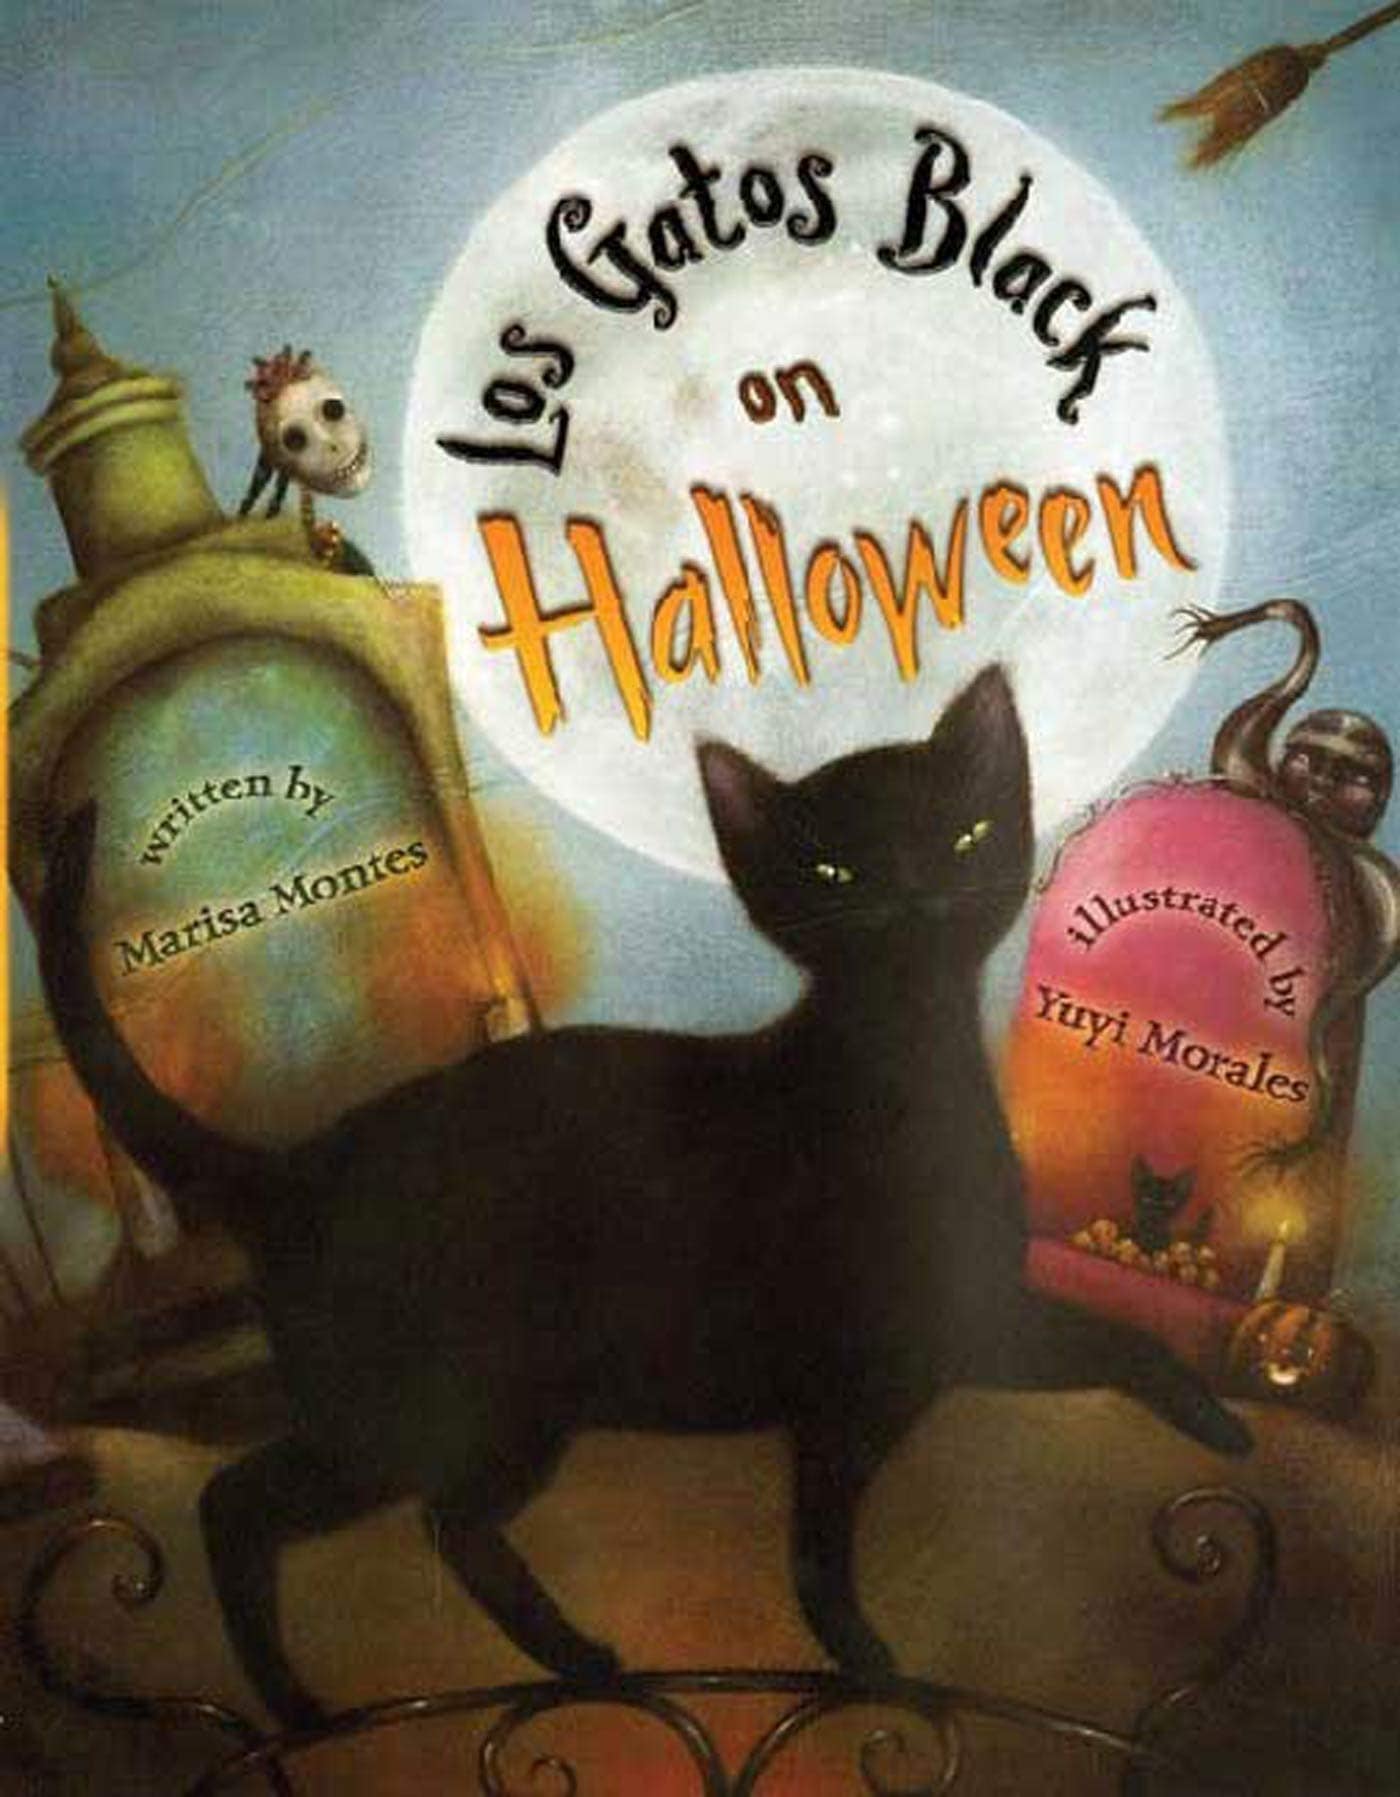 "Los Gatos Black on Halloween" by Marisa Montes